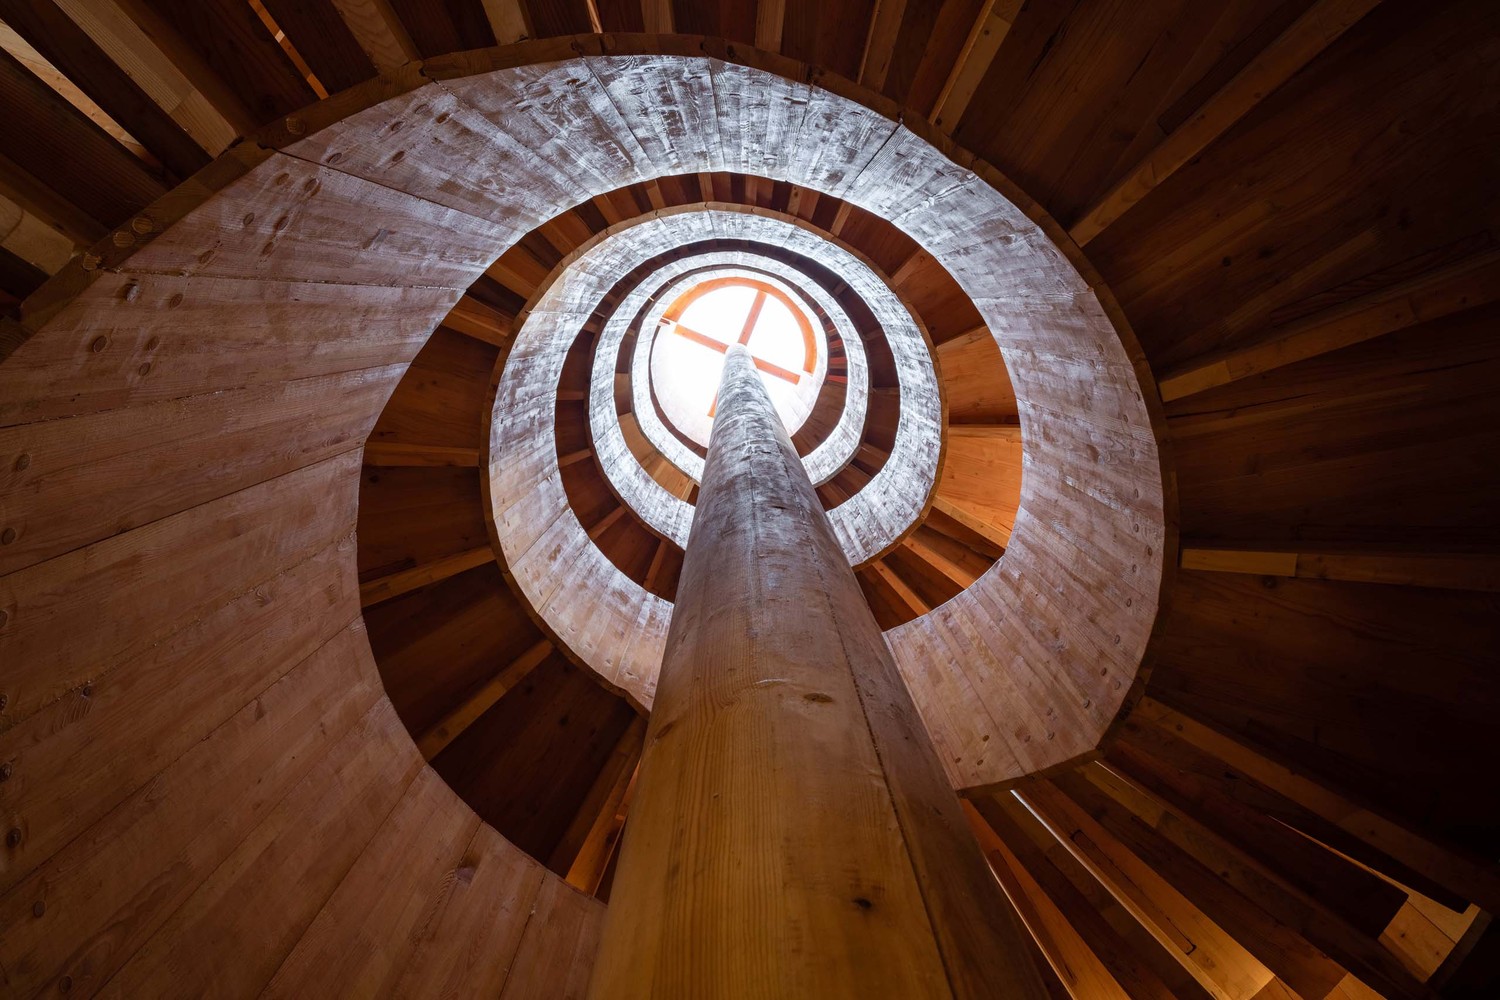 منبع نور داخل برج تماشا، نورگیر وسط سقف آن است که نور را کم و زیاد در همه قسمت ها پخش می کند.